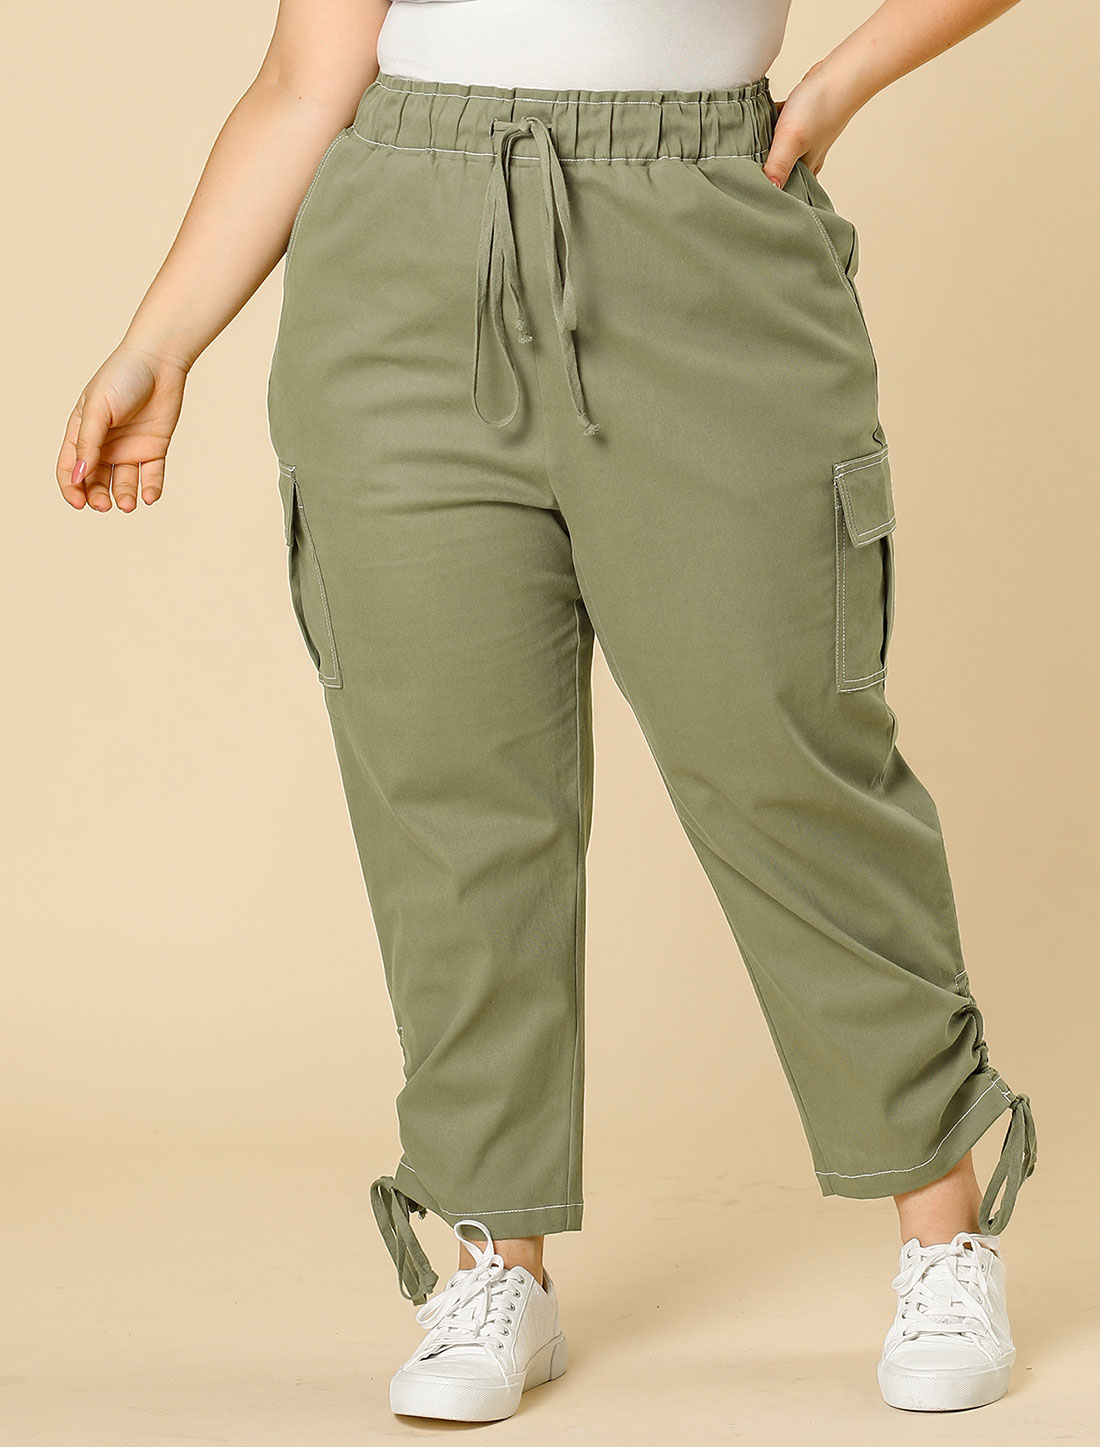 Unique Bargains Agnes Orinda Women's Plus Size Drawstring Elastic Waist Cargo Pants with Pockets